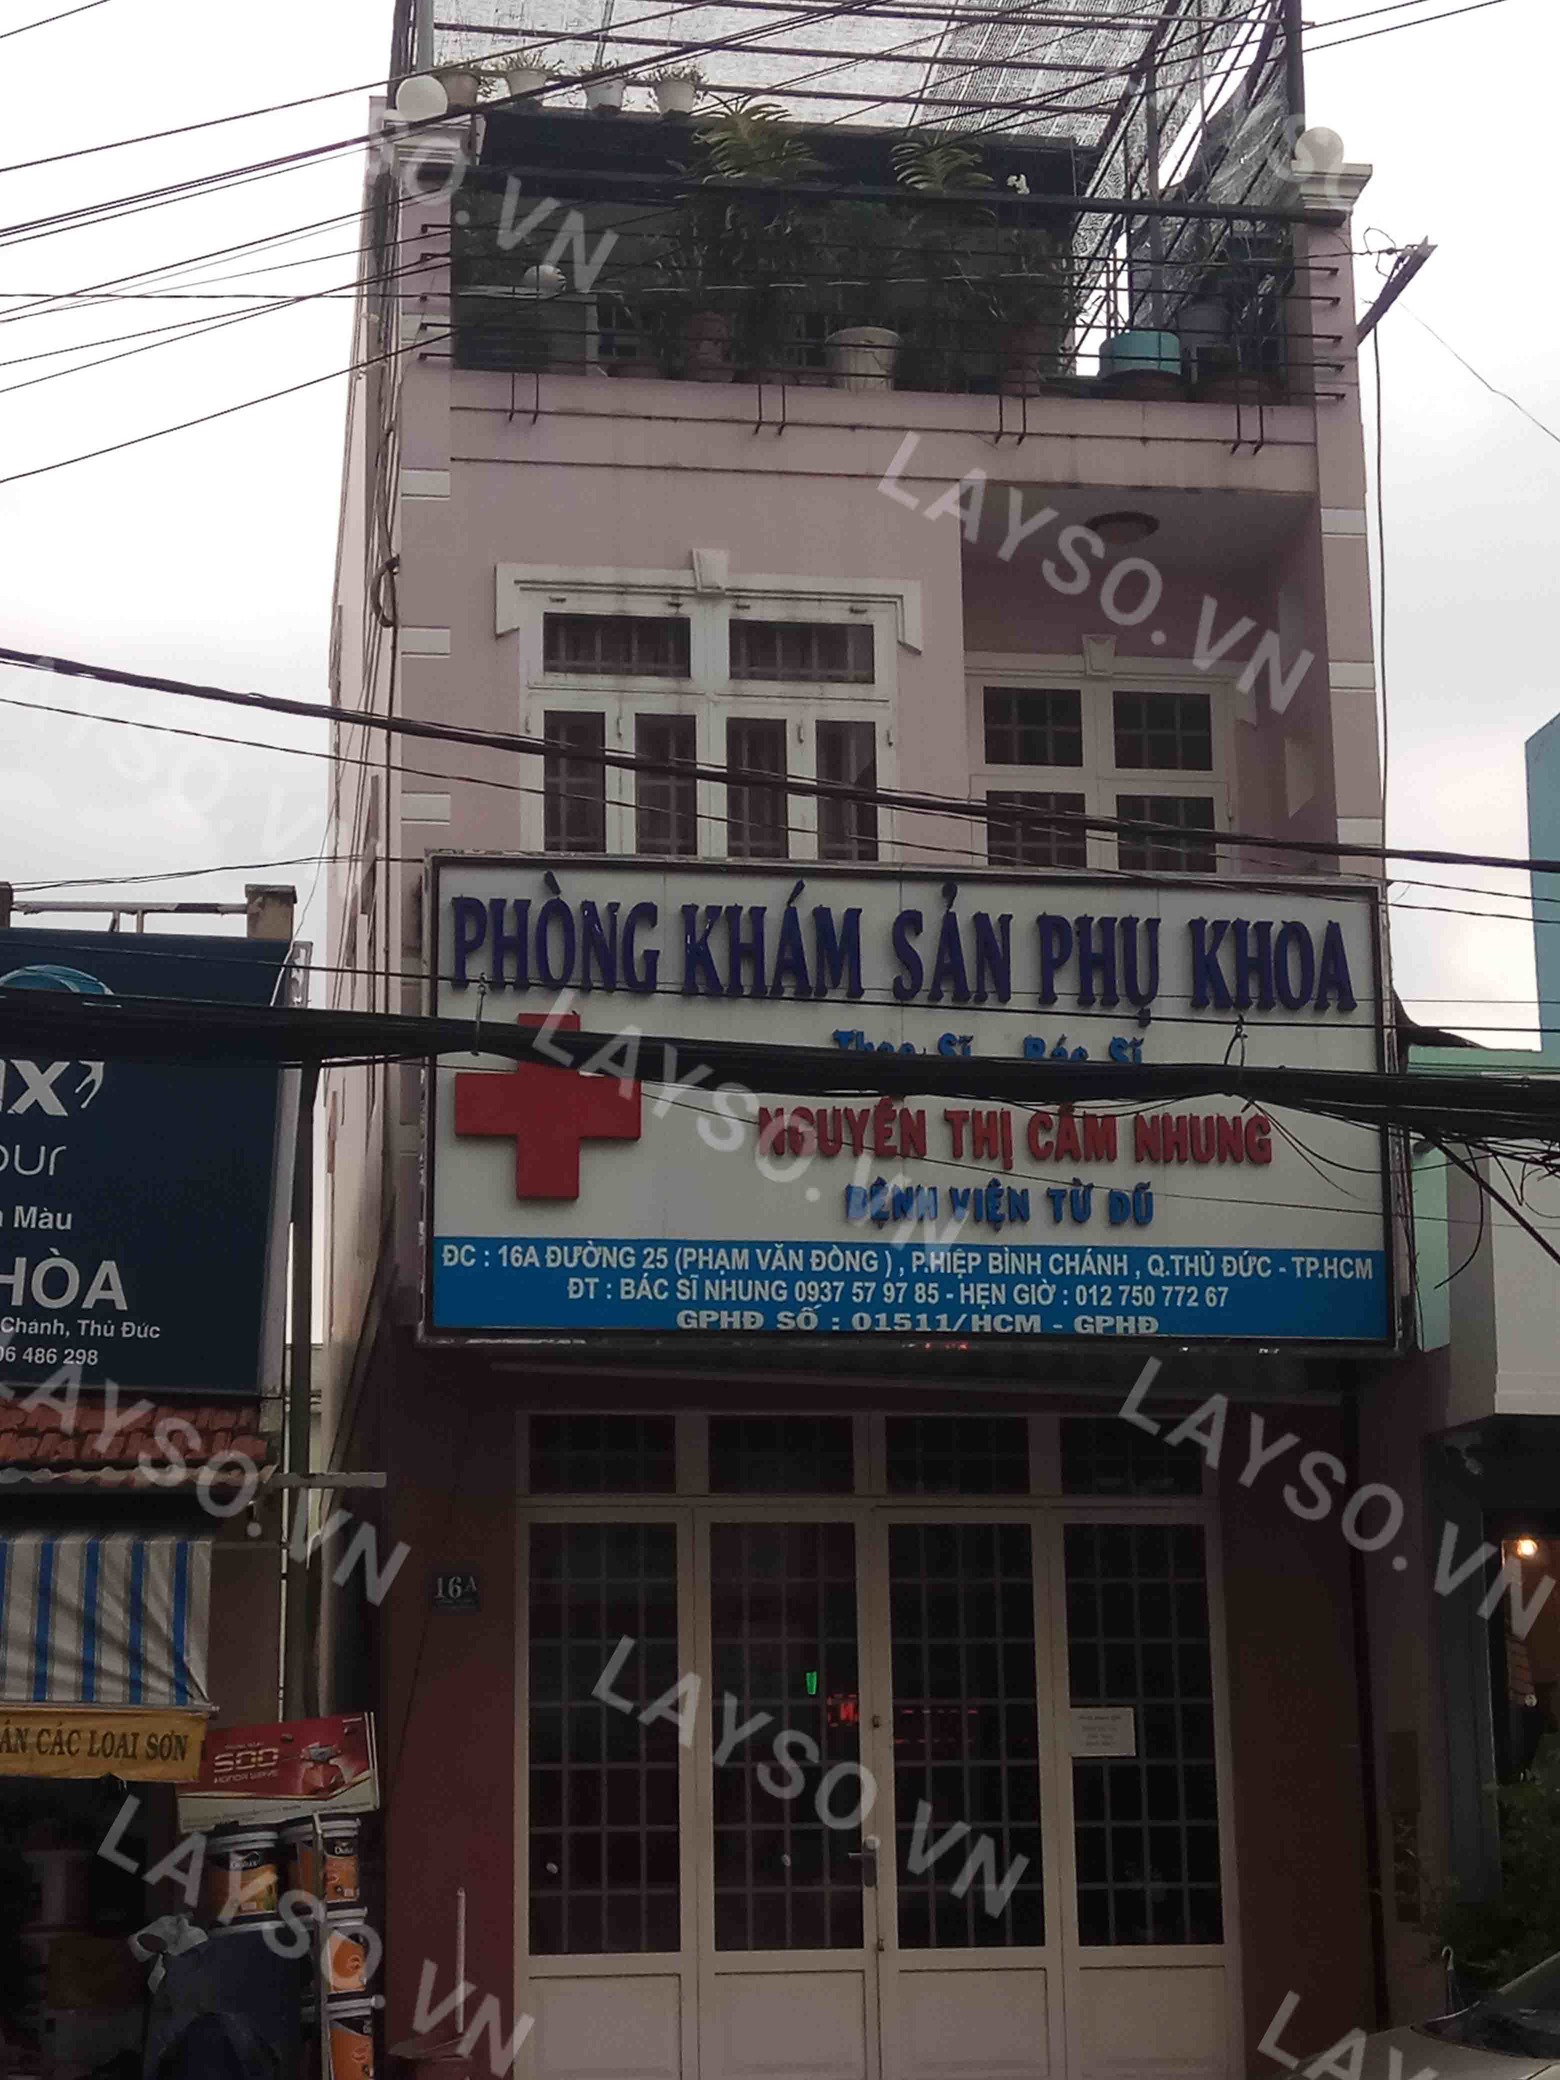 Phòng khám Sản phụ khoa  - ThS.BS. Nguyễn Thị Cẩm Nhung